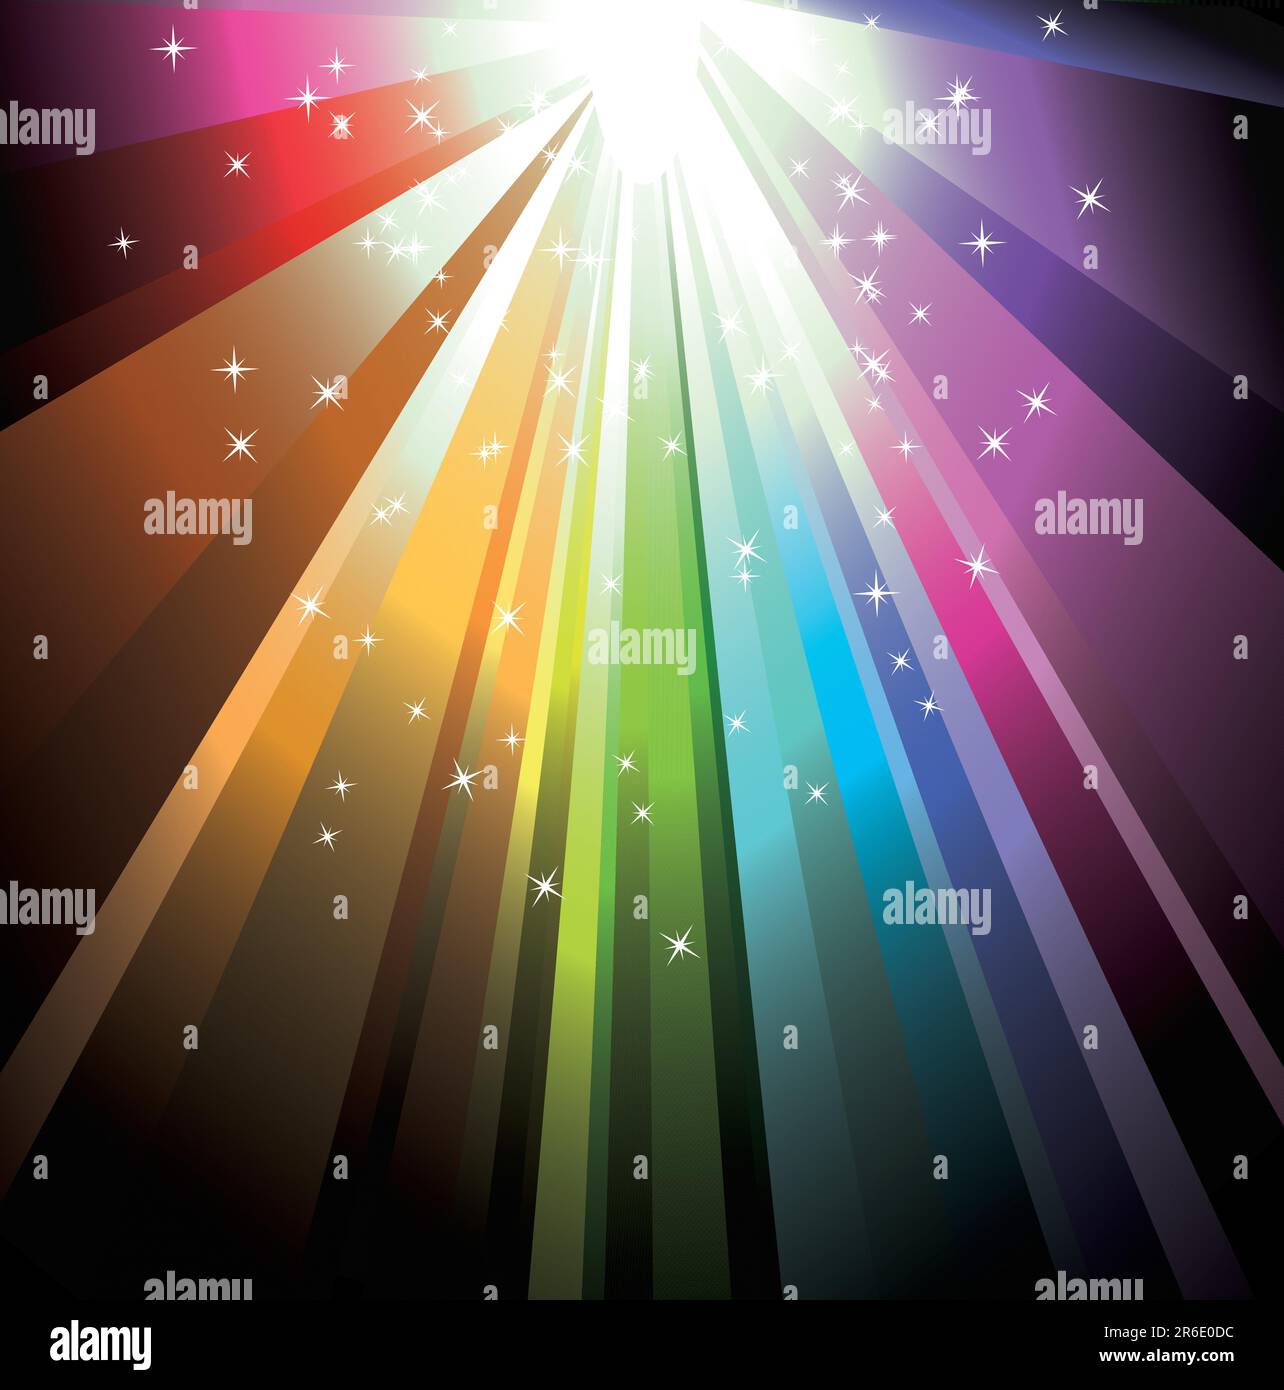 Magic Rainbow Light avec des étoiles délicates Illustration de Vecteur